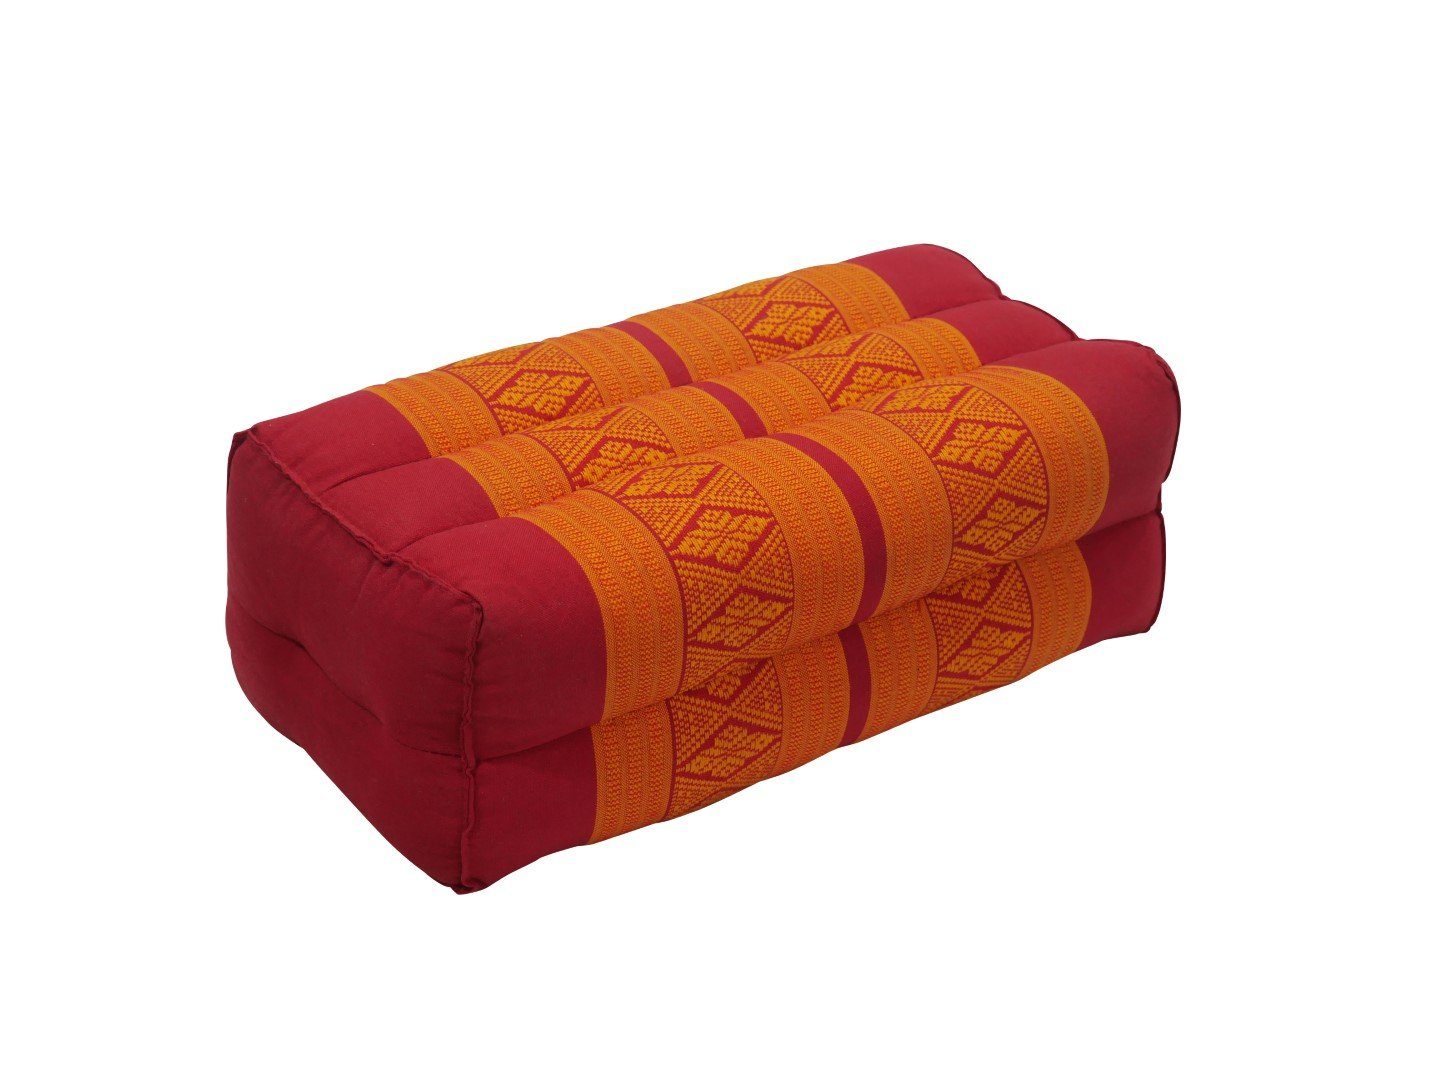 Yoga-Meditationskissen, my rot-orange unterstützend, Hamam orientalischem mit Muster Yogakissen Thaimassage Kissen,